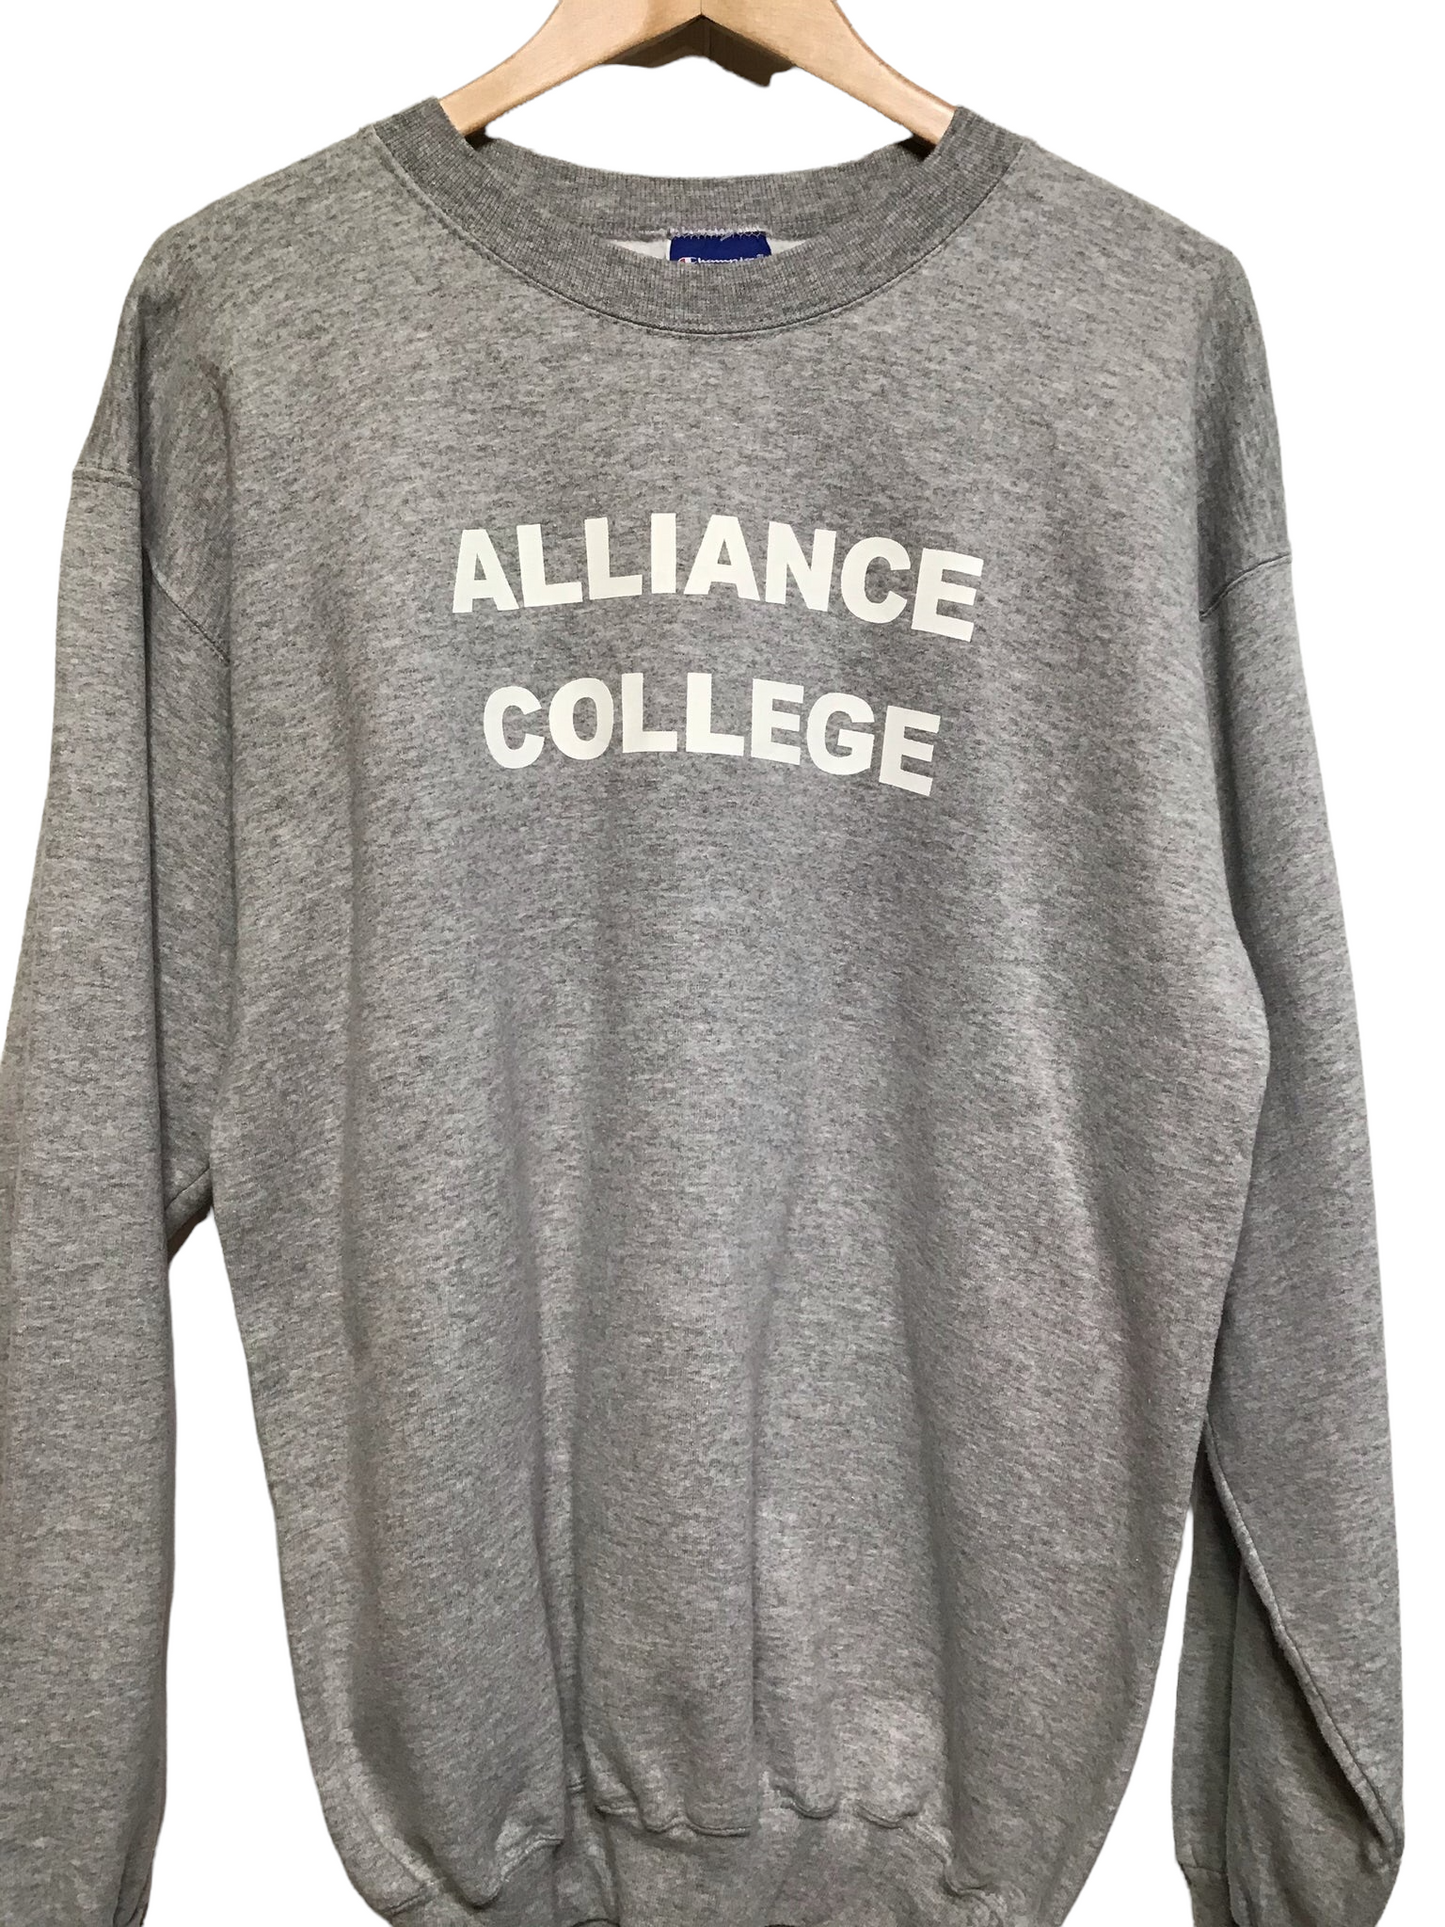 Champion ‘Alliance College’ Sweatshirt (Size M)